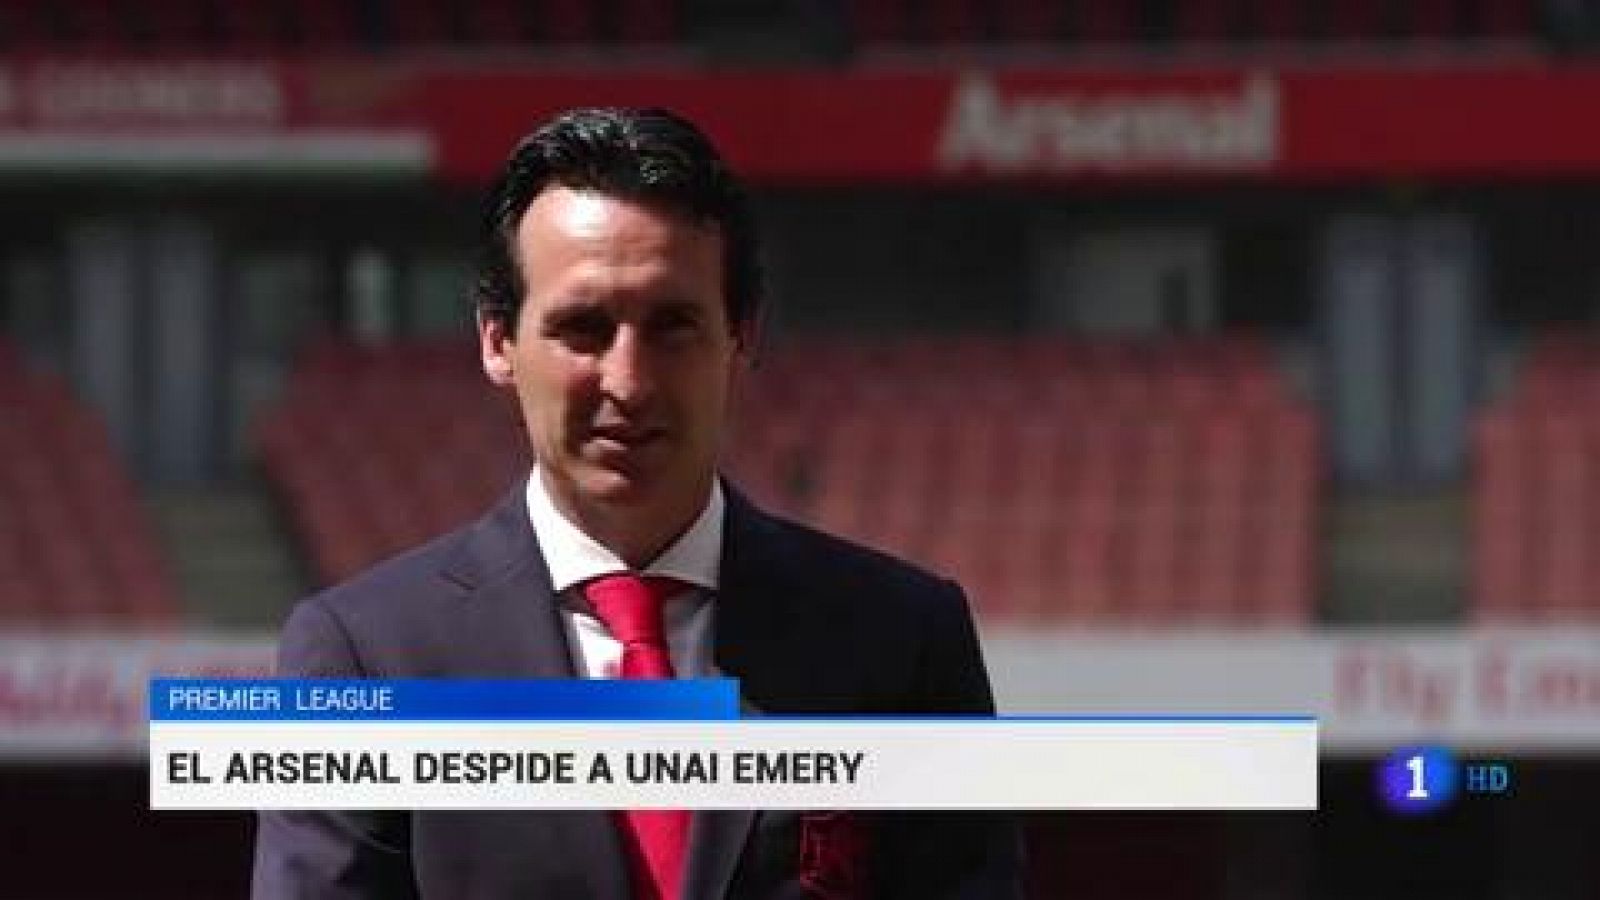 El español Unai Emery ha sido destituido como entrenador del Arsenal. Una decisión que llega después de la derrota ante el Eintr